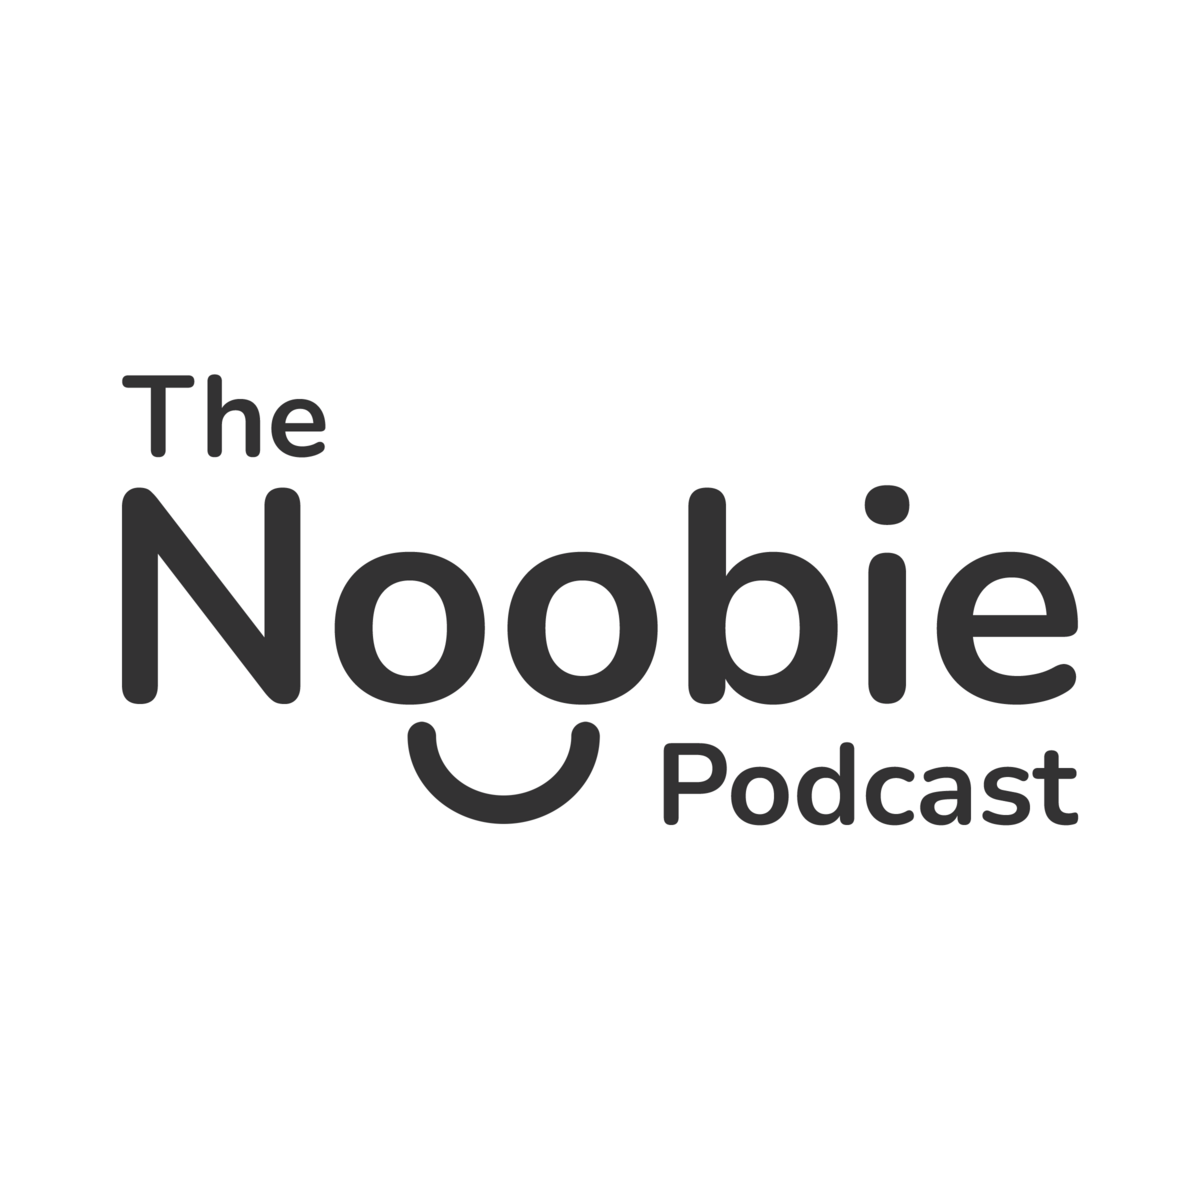 Noobie Podcast Logo-Square